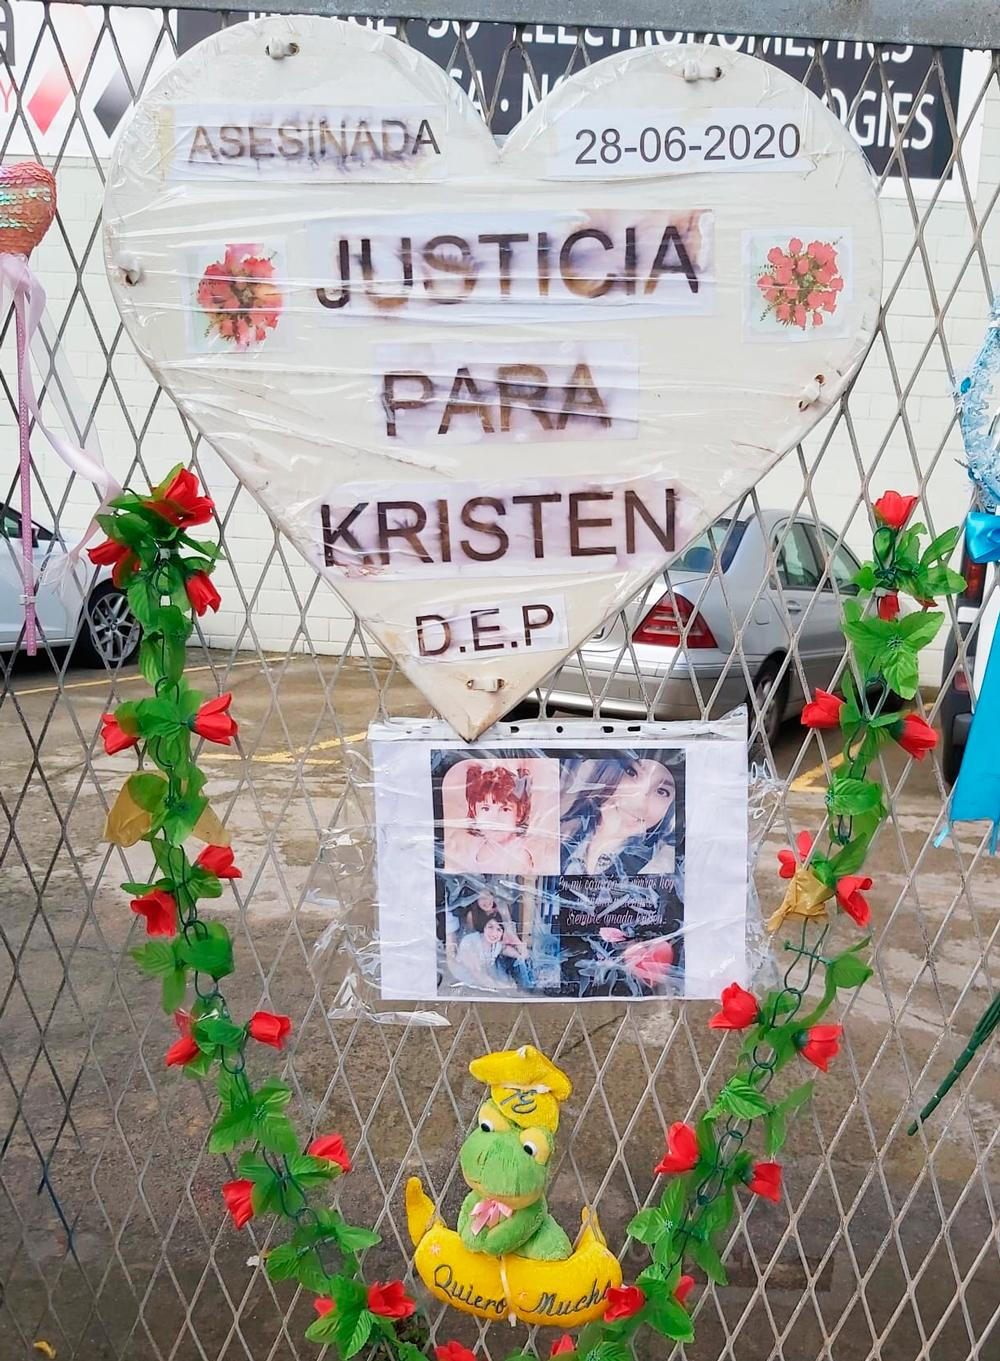 El memorial dedicado a Kristen, la jovena asesinada en Cornellà, en junio / CG